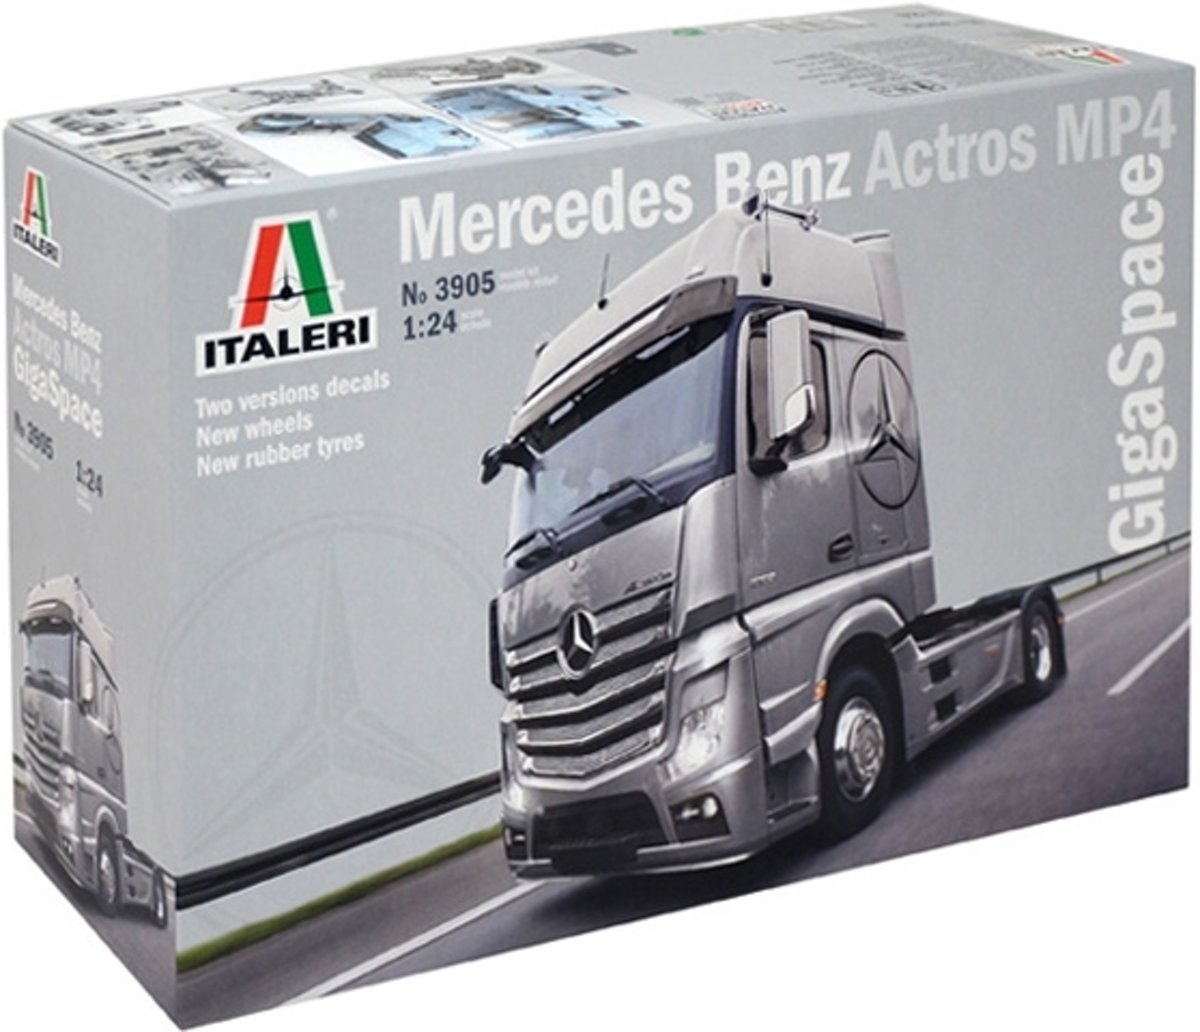 Italeri 3905 ITALERI Mercedes Benz Actros Gigaspace miniatuur 1:24